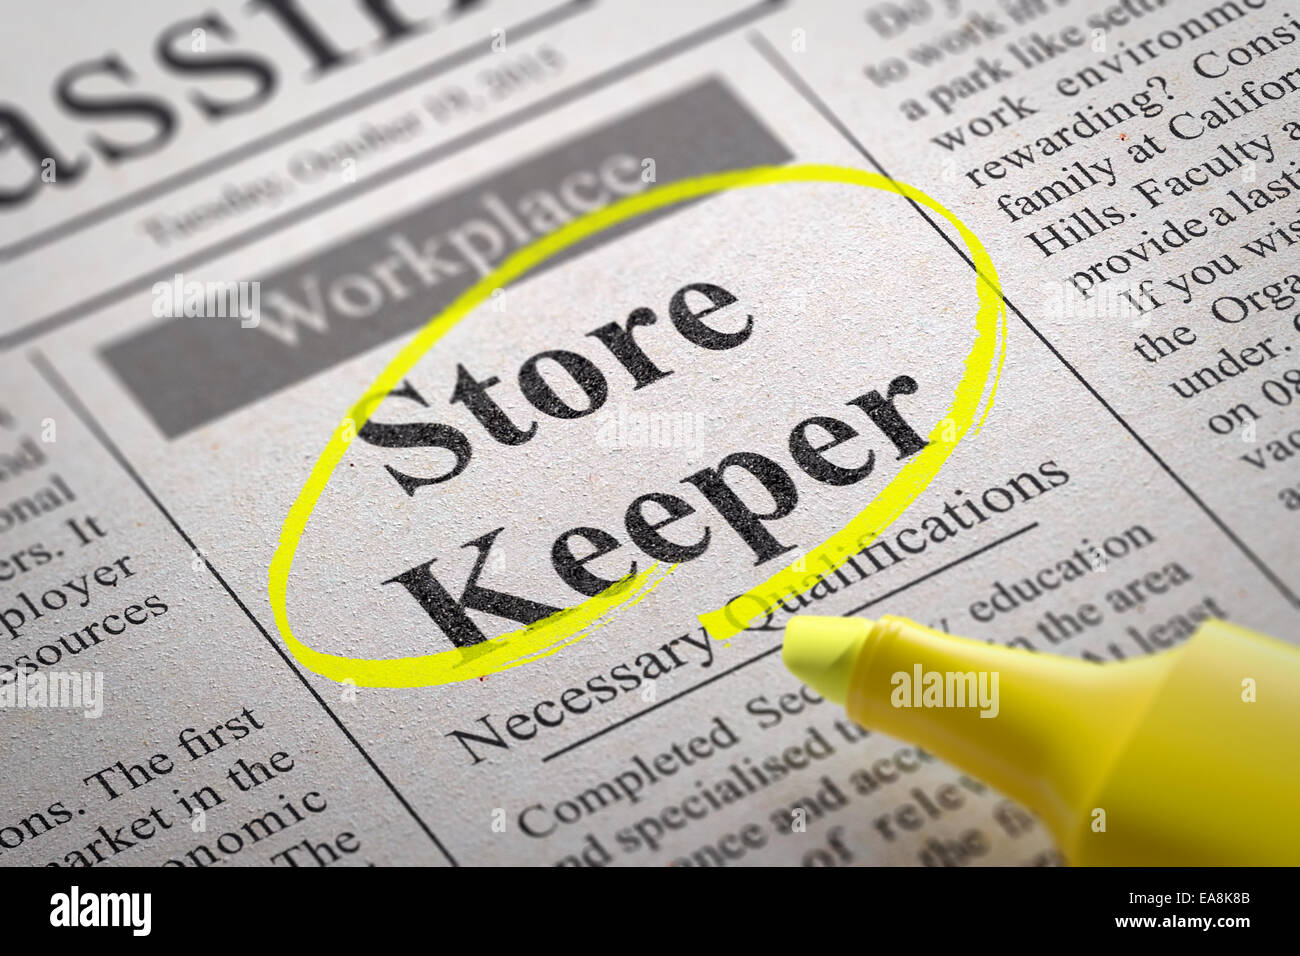 Store Keeper vacante nel giornale. Ricerca di lavoro concetto. Foto Stock